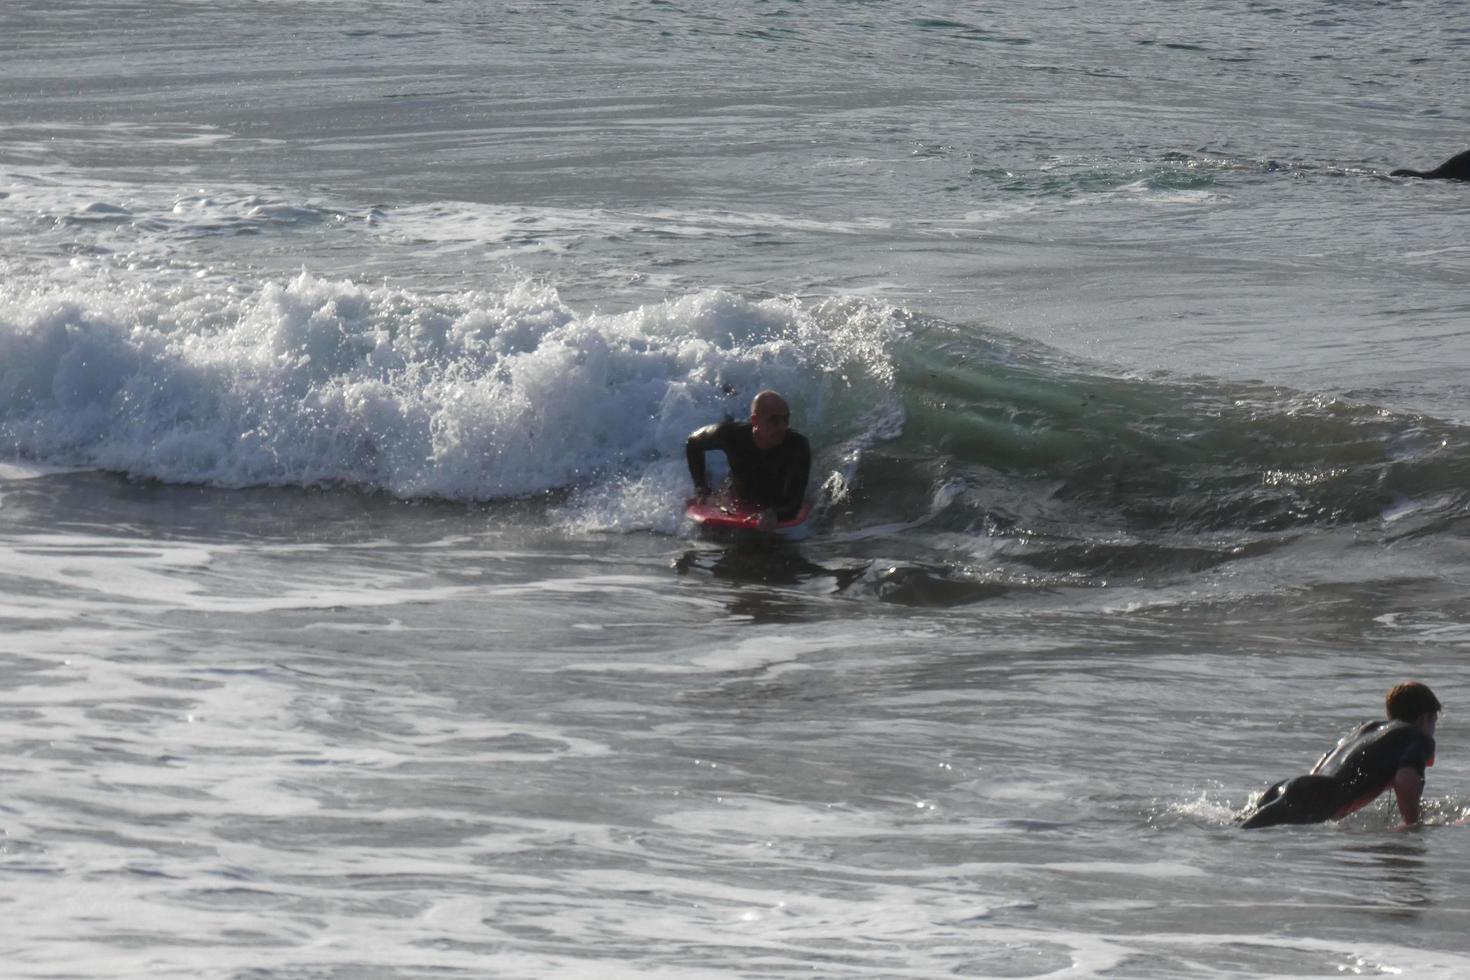 surfare ridning små hav vågor foto